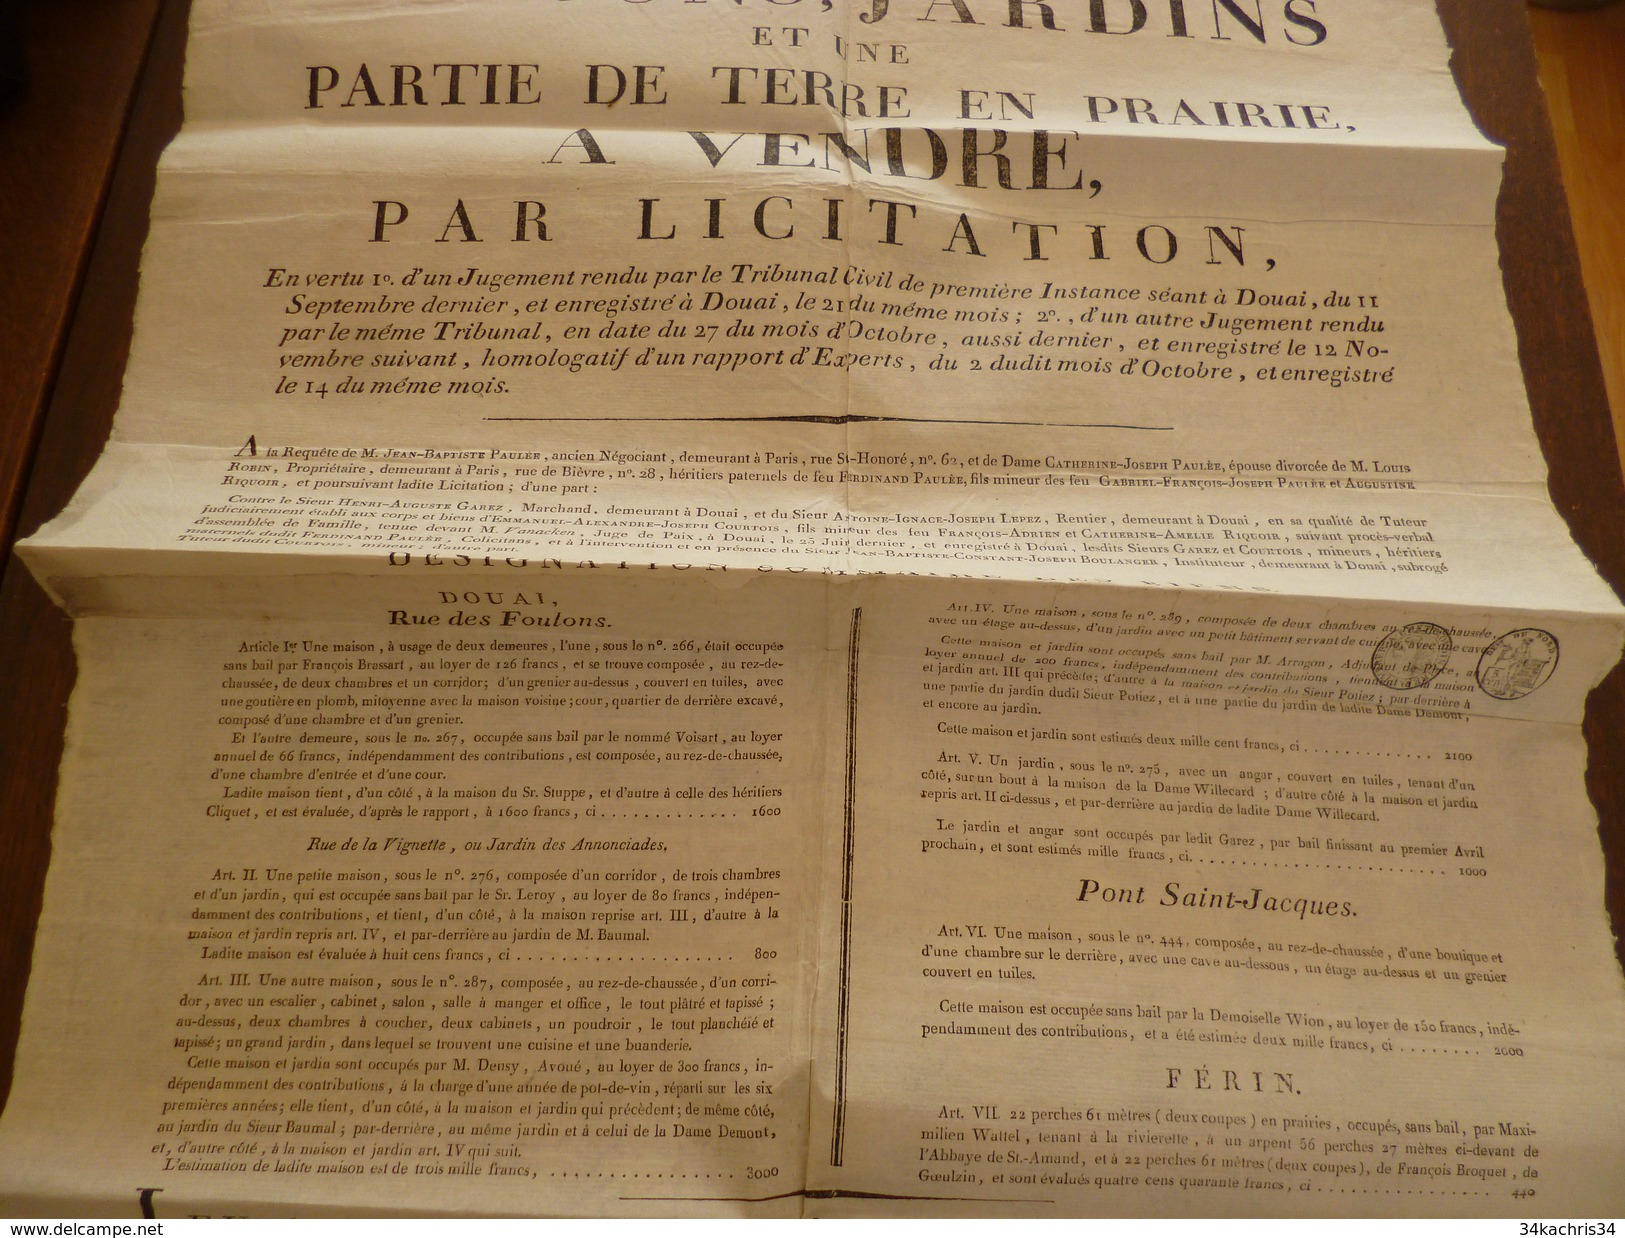 Affiche Placard Vente Douai Et Ferrin Maison, Terrain 1813 4 X A3 - Decrees & Laws